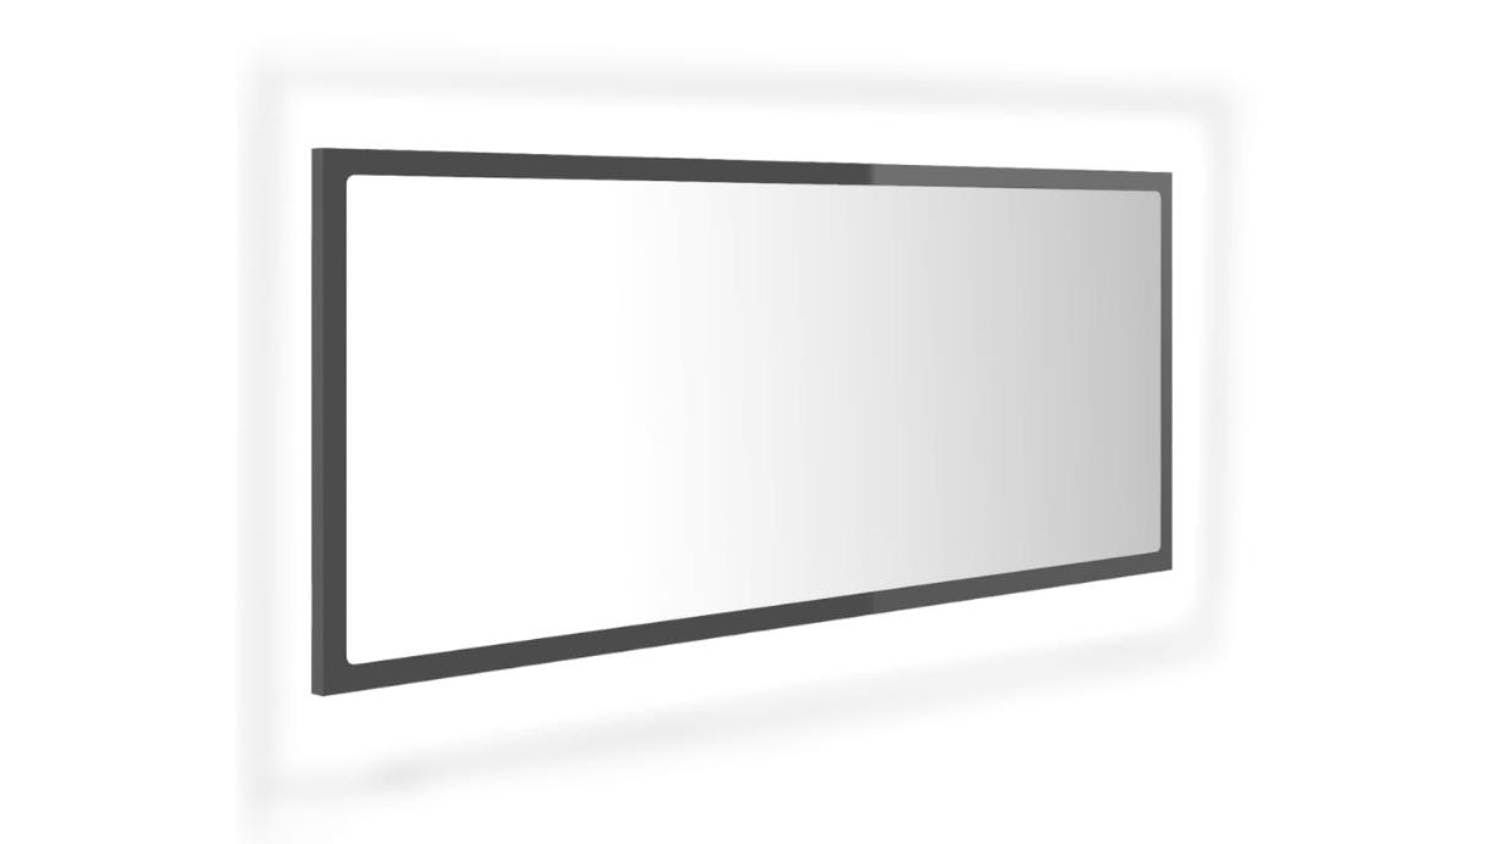 NNEVL LED Backlit Bathroom Mirror 100 x 8.5 x 37cm - Gloss Grey